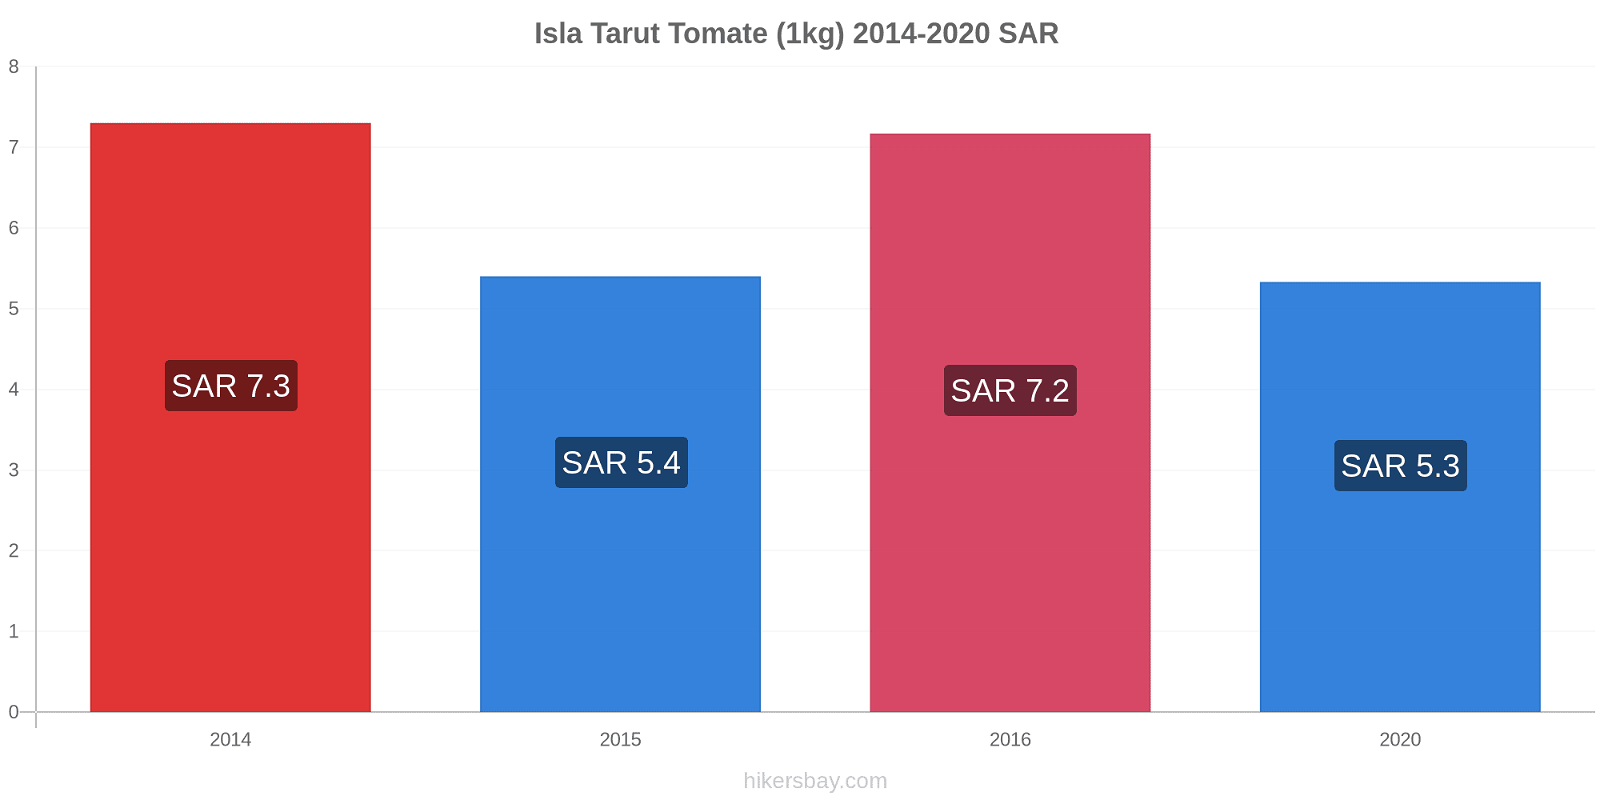 Isla Tarut cambios de precios Tomate (1kg) hikersbay.com